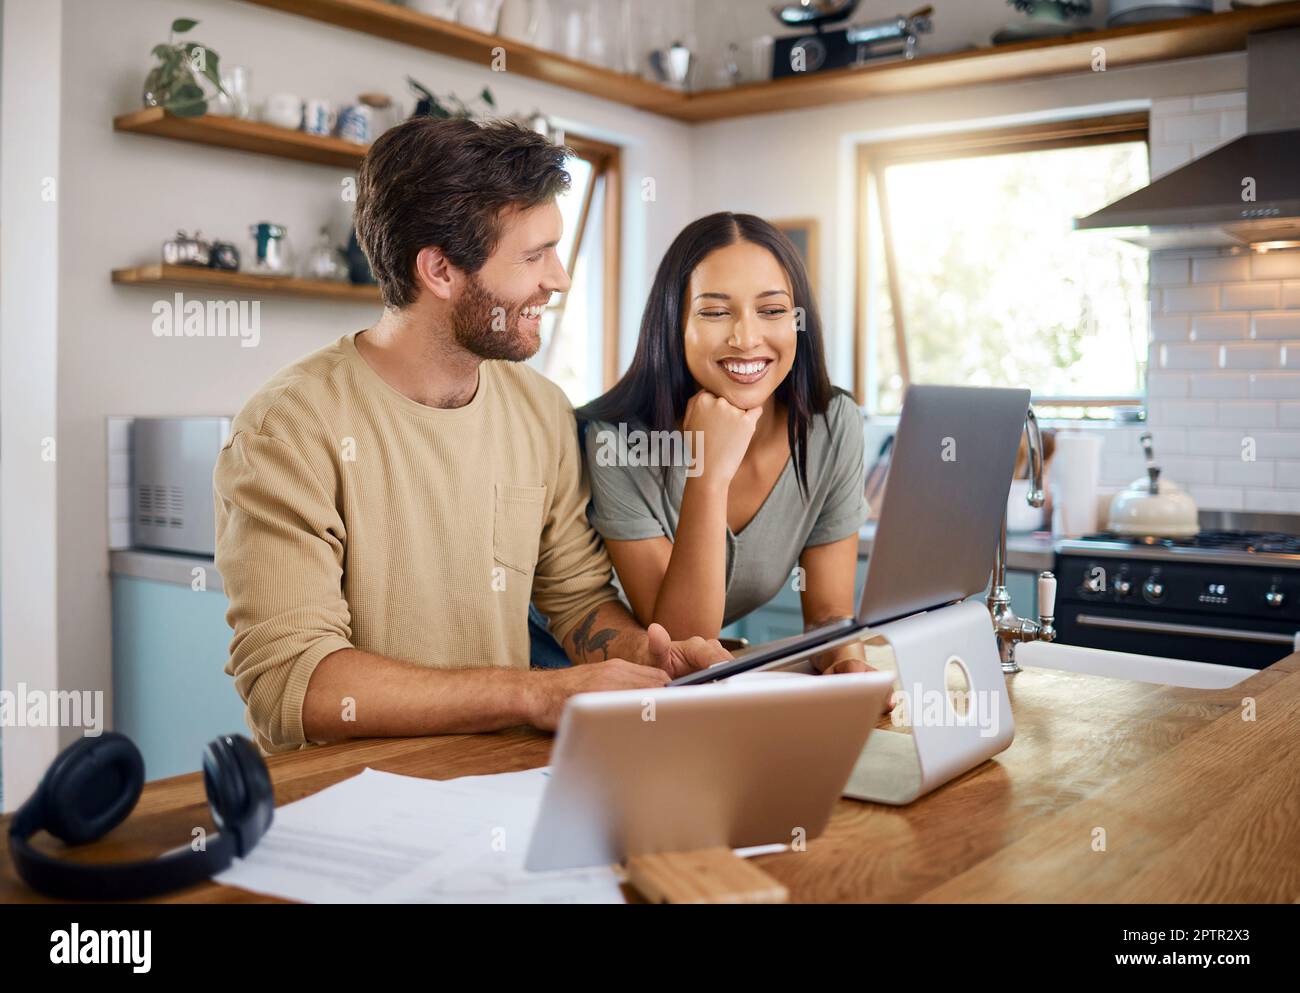 Glücklicher junger Kaukasier, der an einem Laptop arbeitet, während seine Frau neben ihm steht und auf den Bildschirm schaut. Ein Mann, der freiberuflich arbeitet und abgelenkt wird Stockfoto